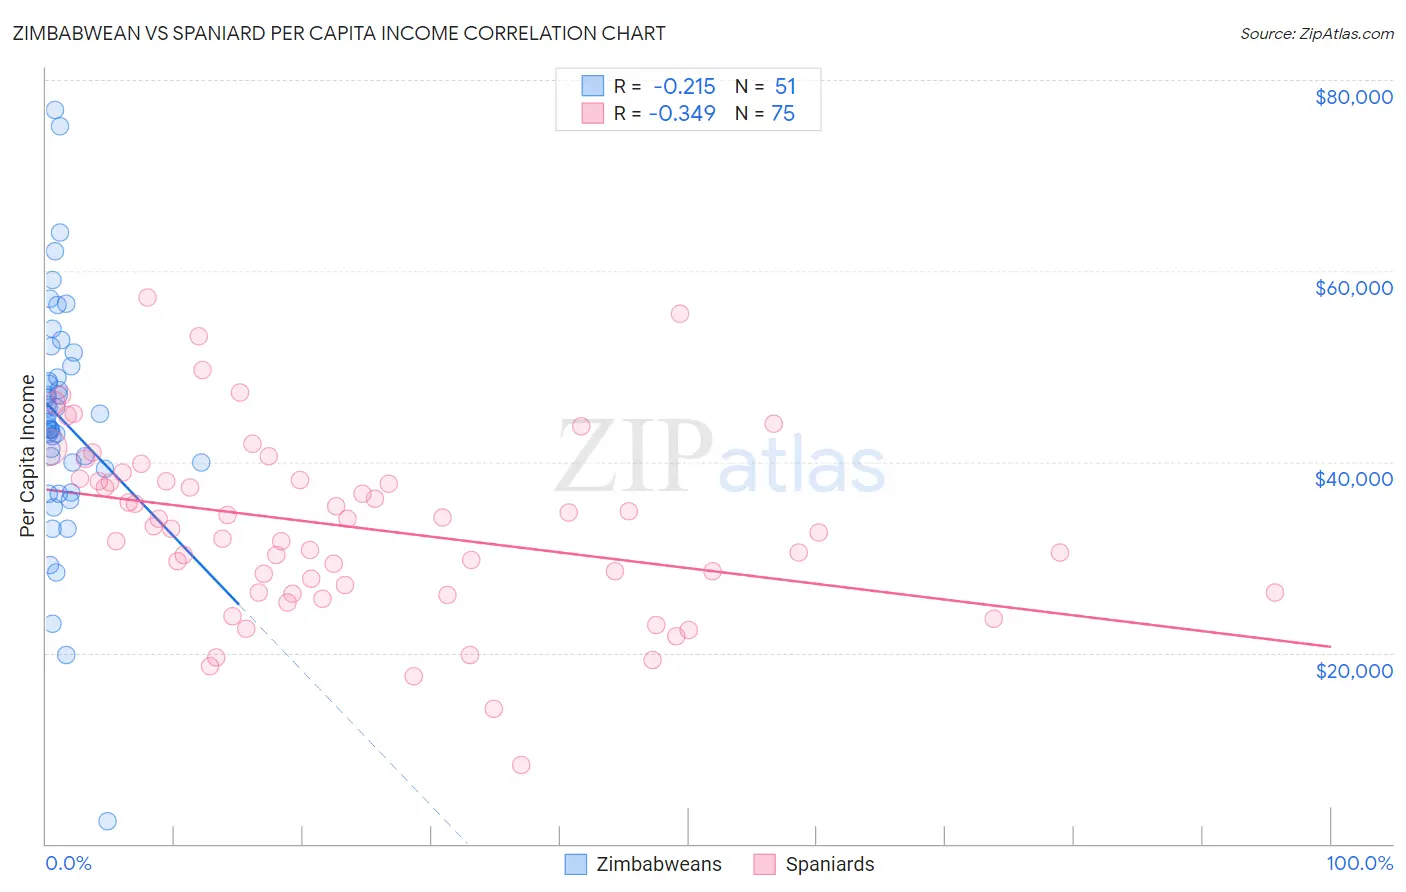 Zimbabwean vs Spaniard Per Capita Income